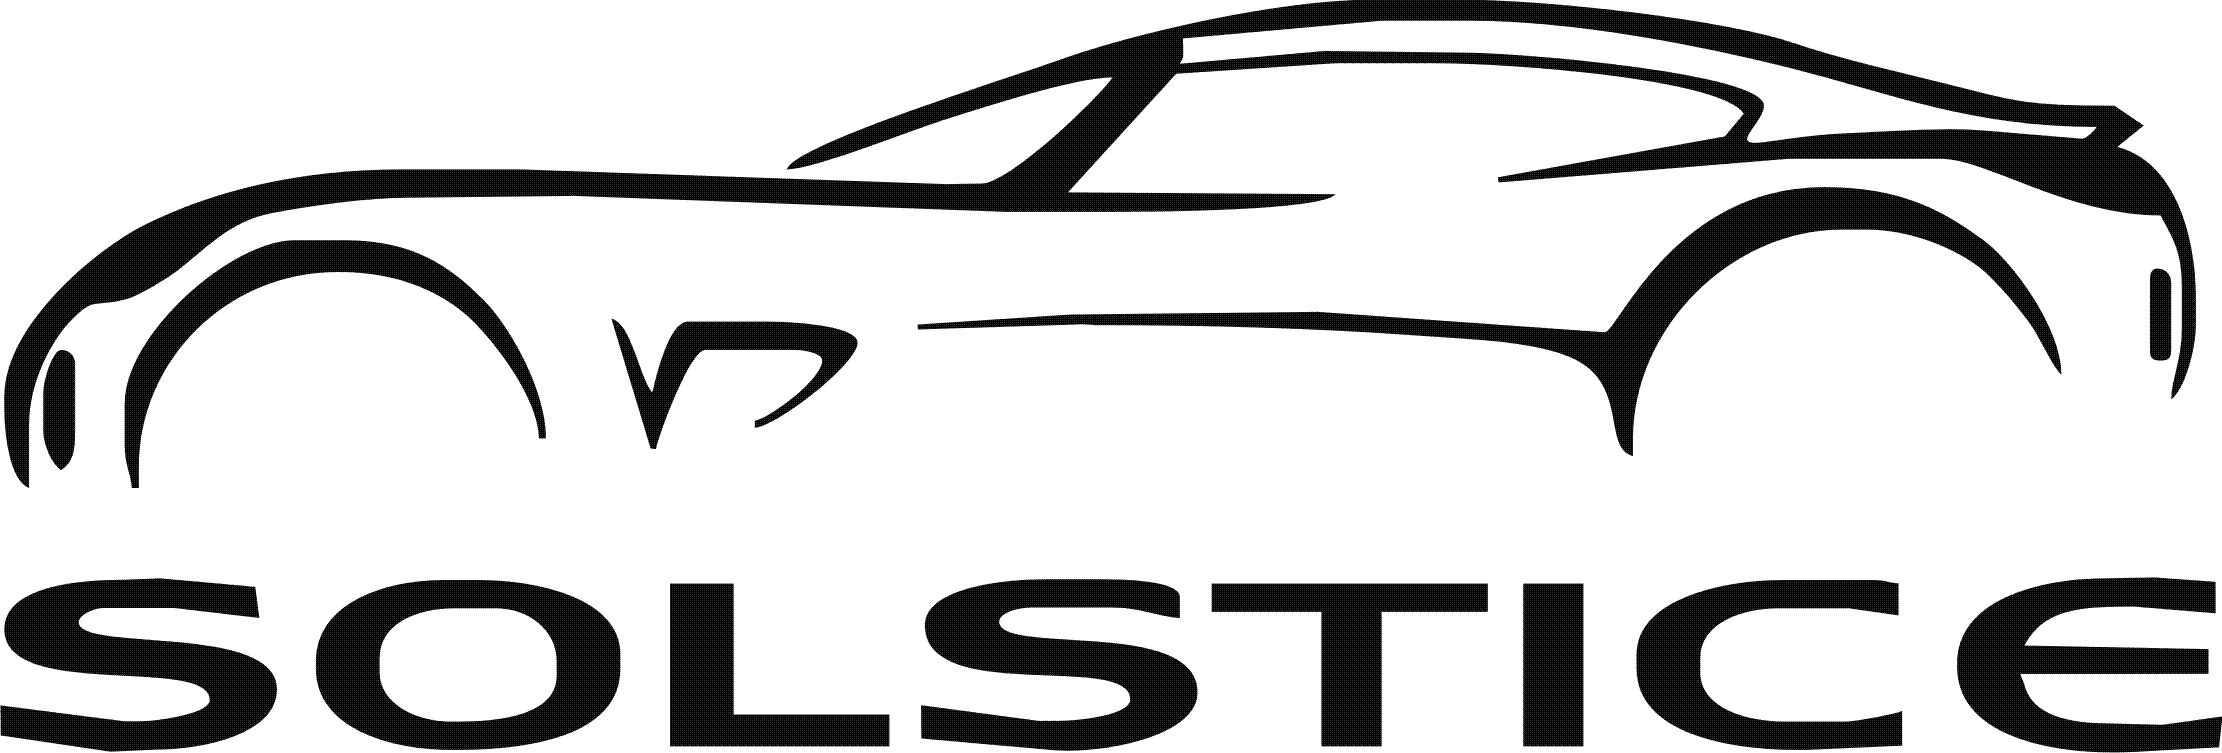 clipart car logo - photo #32